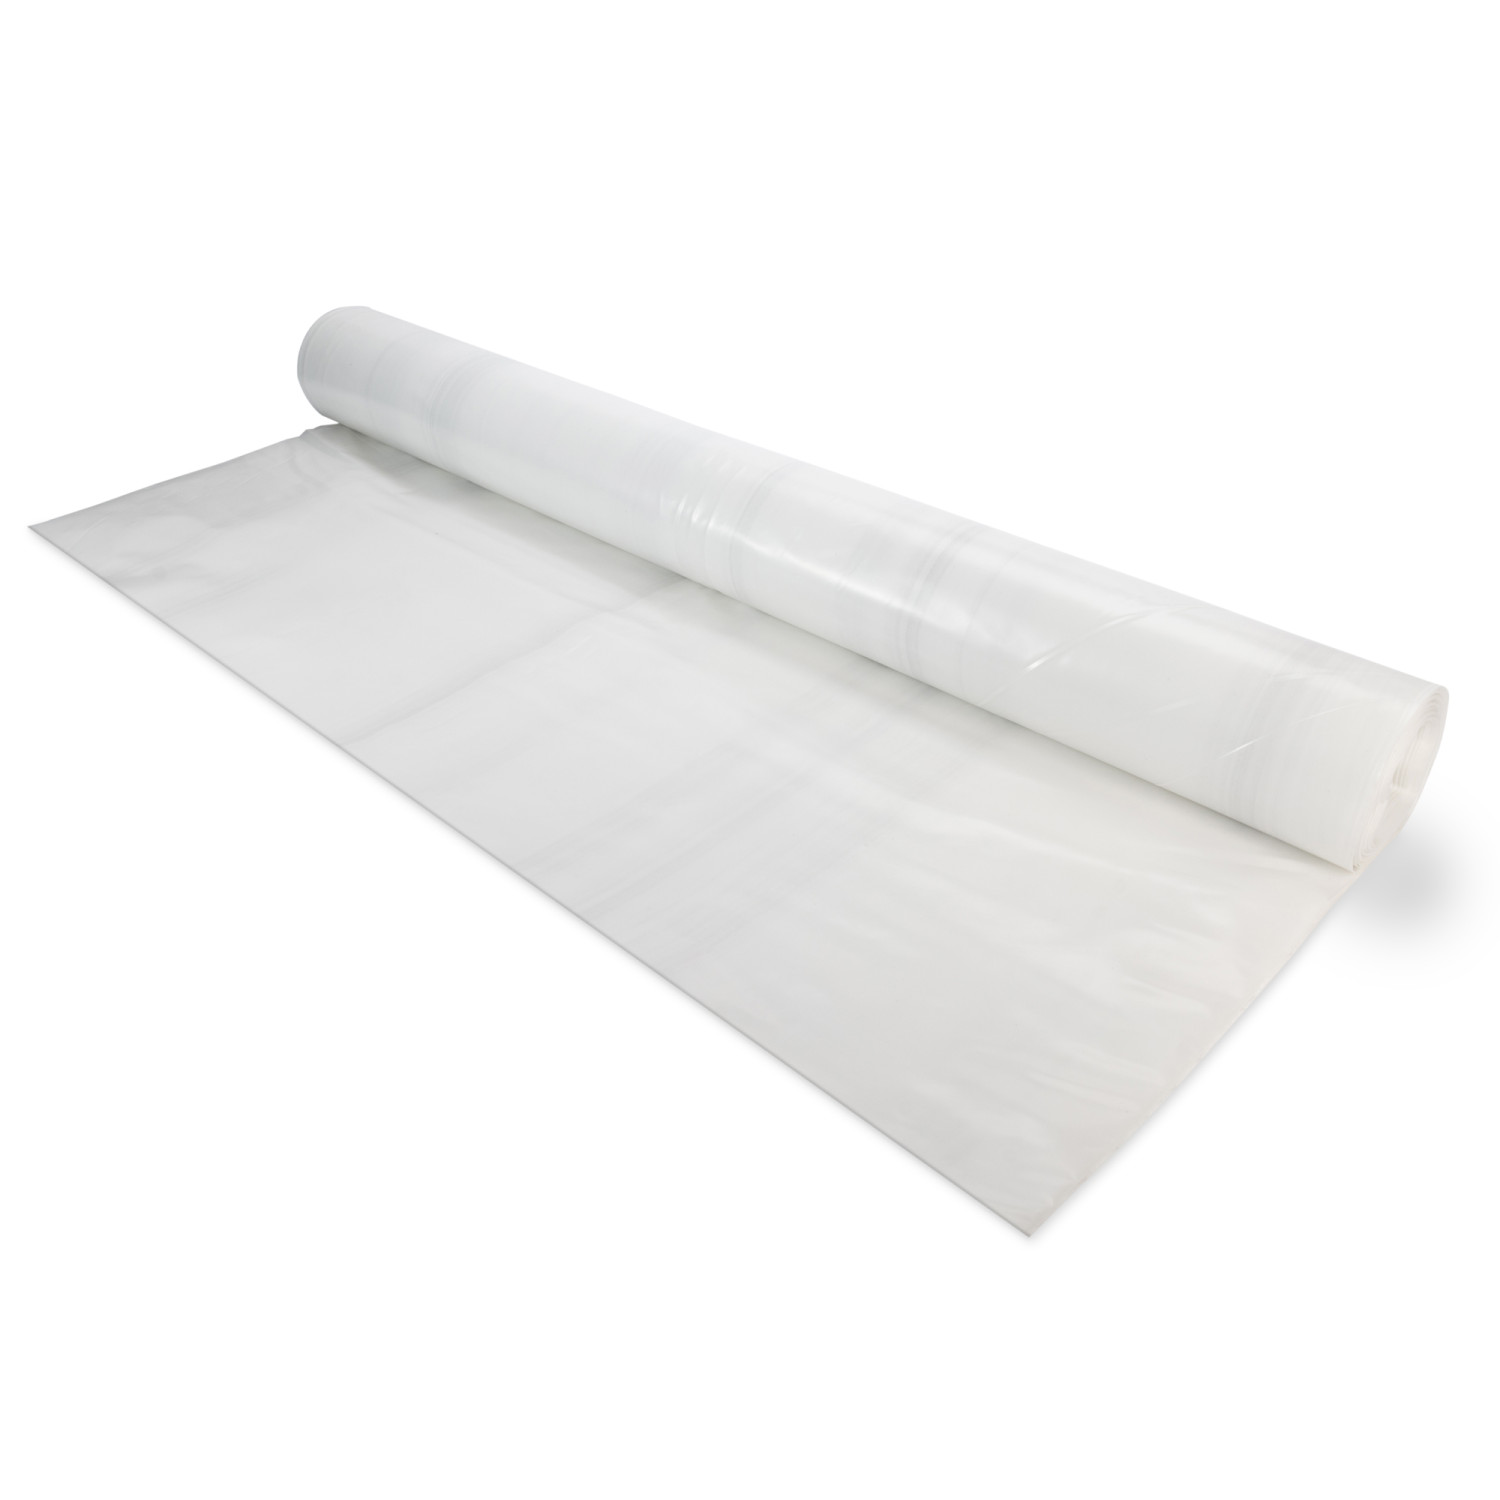 Plastic Sheeting - Heavy Duty Plastic Sheeting, White Plastic